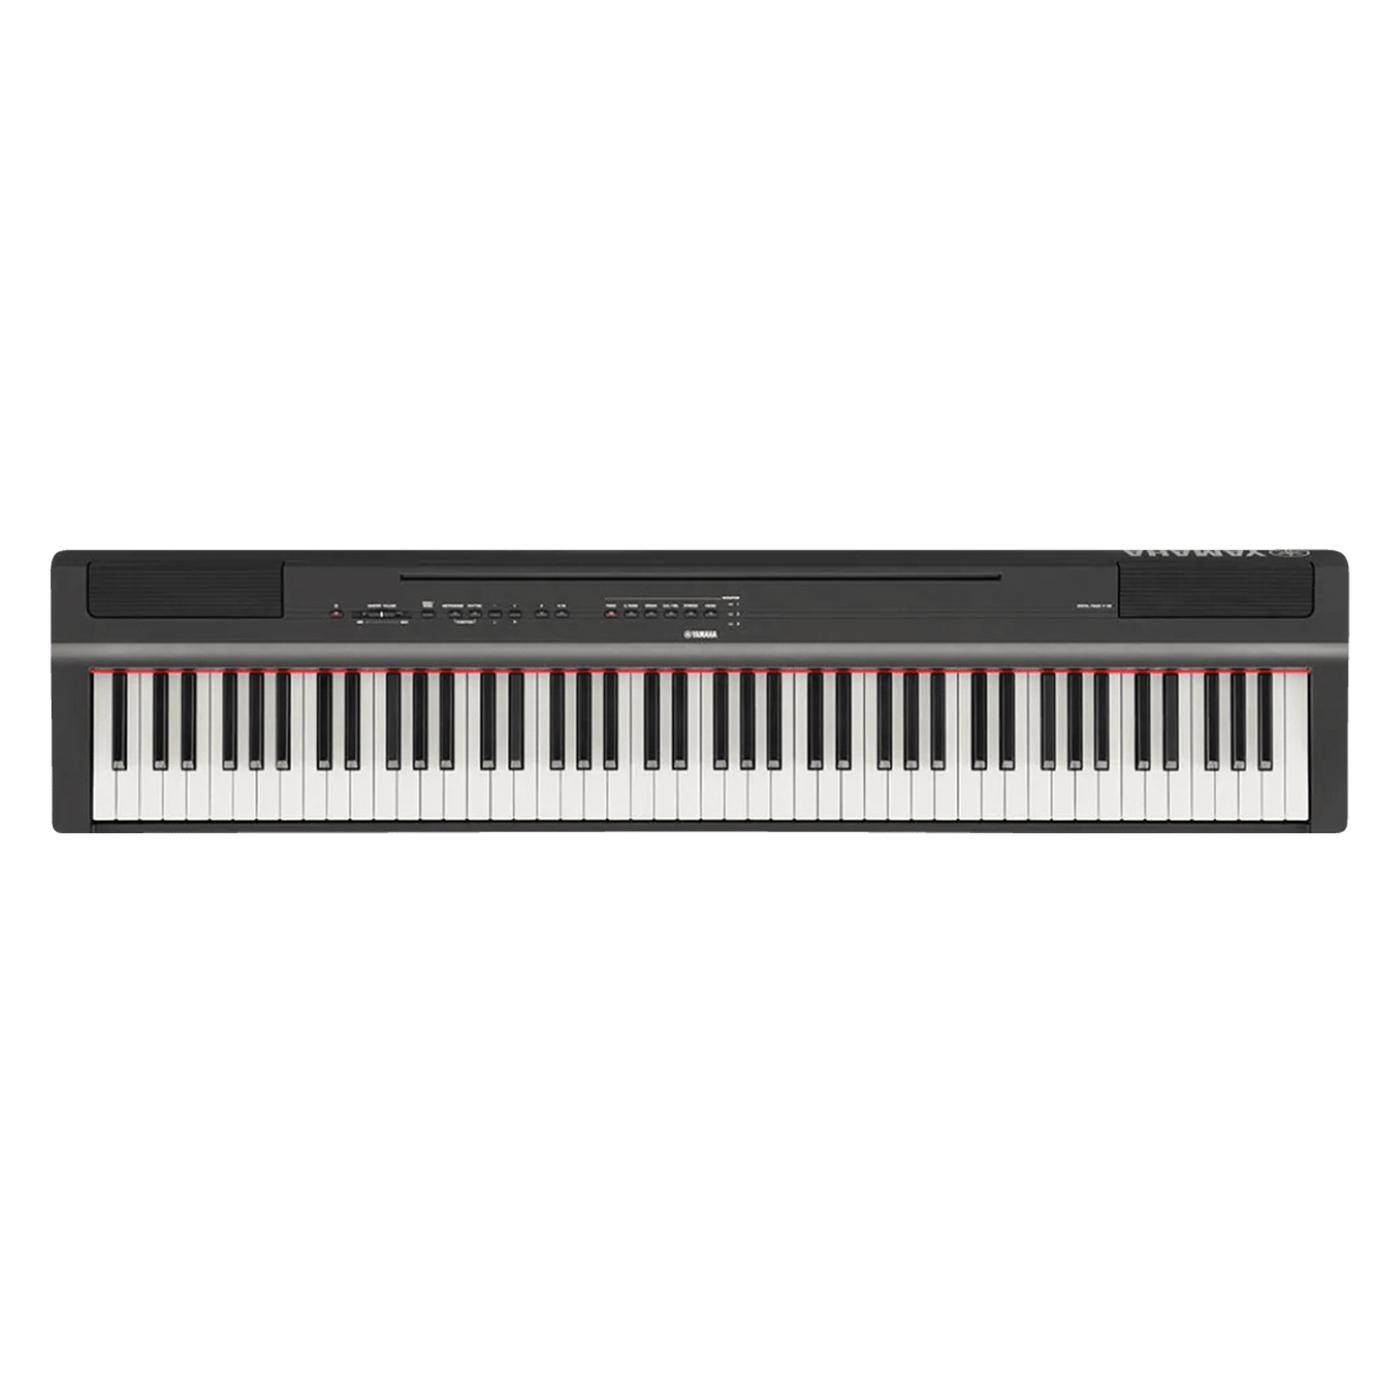 Yamaha P-125 - $879990 - Gearhub - El Yamaha P-125 es un piano digital compacto que combina una interpretación pianística excelente con un nuevo diseño sencillo y minimalista. Fácilmente transportable y muy accesible; la versatilidad de este instrumento te permite disfrutar de la sensación de tocar un piano en cualquier lugar. Información detallada del producto aquí Teclas • Cantidad: 88 • Tipo: Graded hammer standard (GHS) keyboard, matte finish on black keys • Sensibilidad: Hard/medium/soft/fixed Caracter